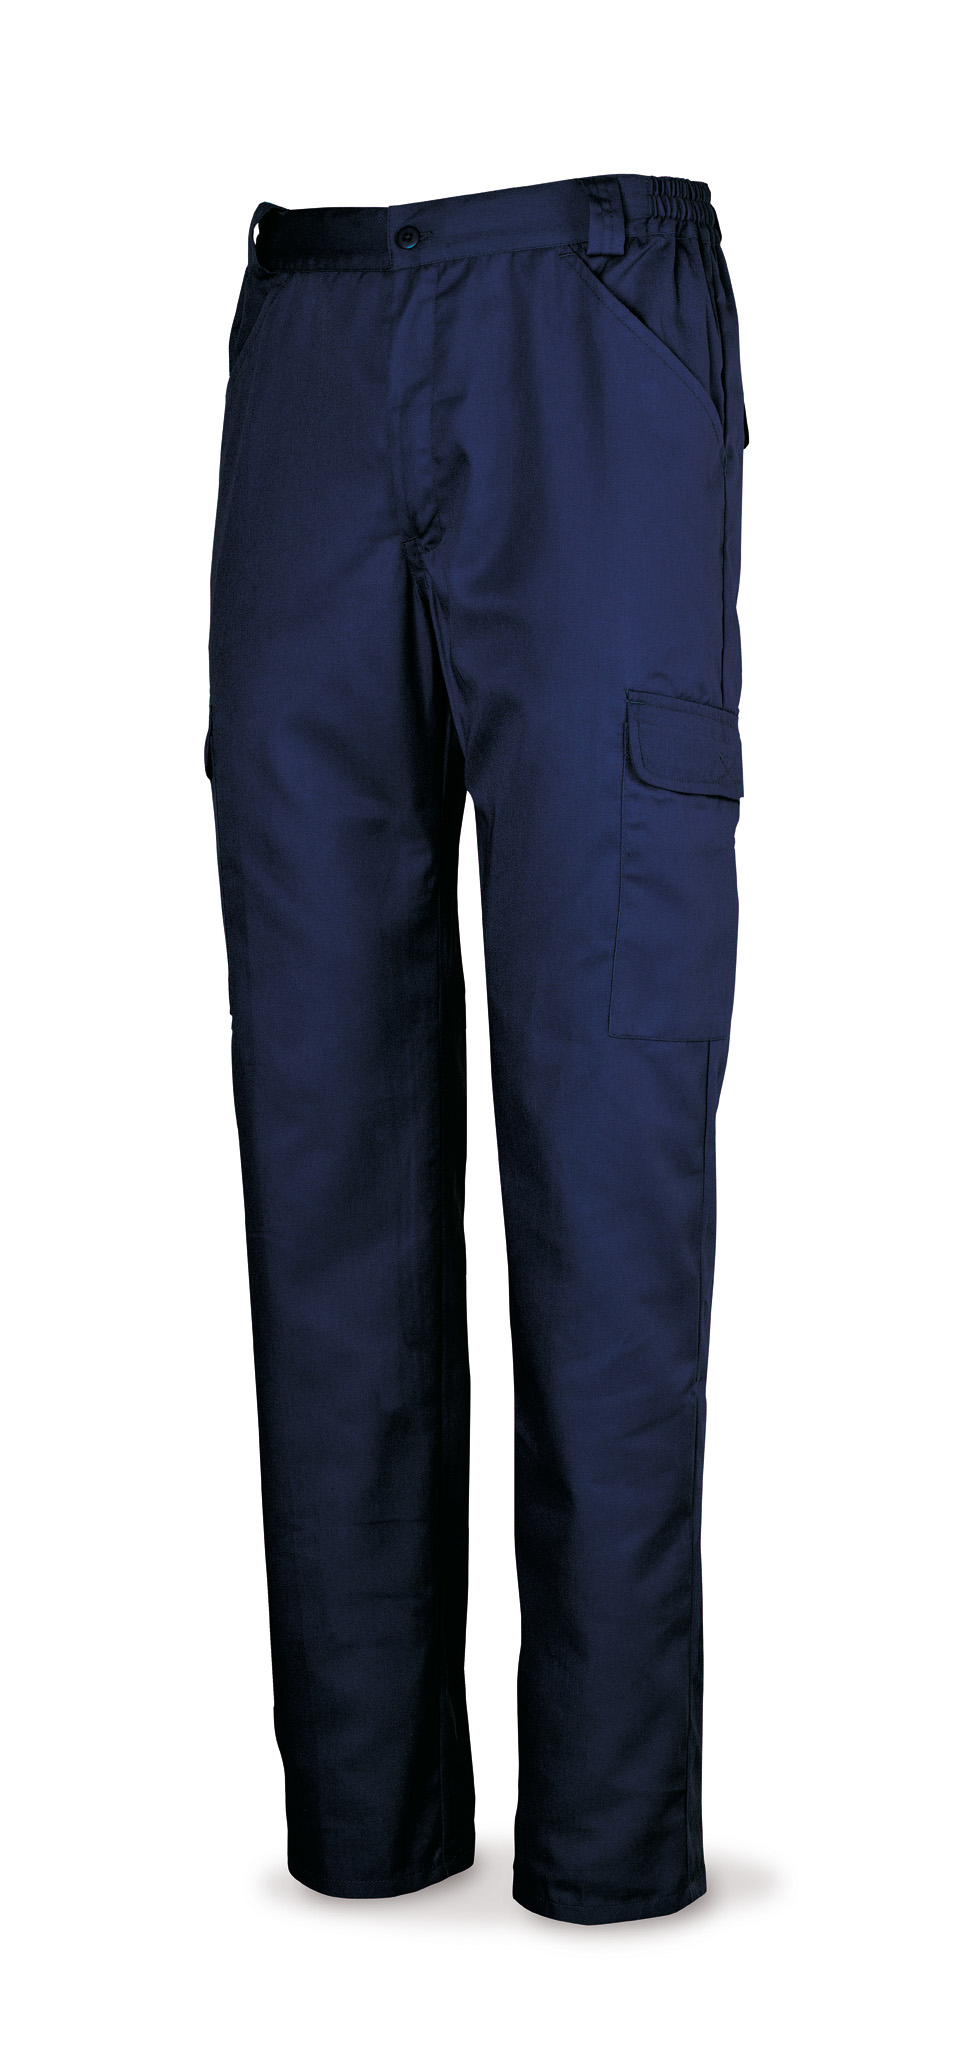 388-PEAM Vestuario Laboral Basic Line Calças de algodão azul marinho 200 g. Multi-bolsos.